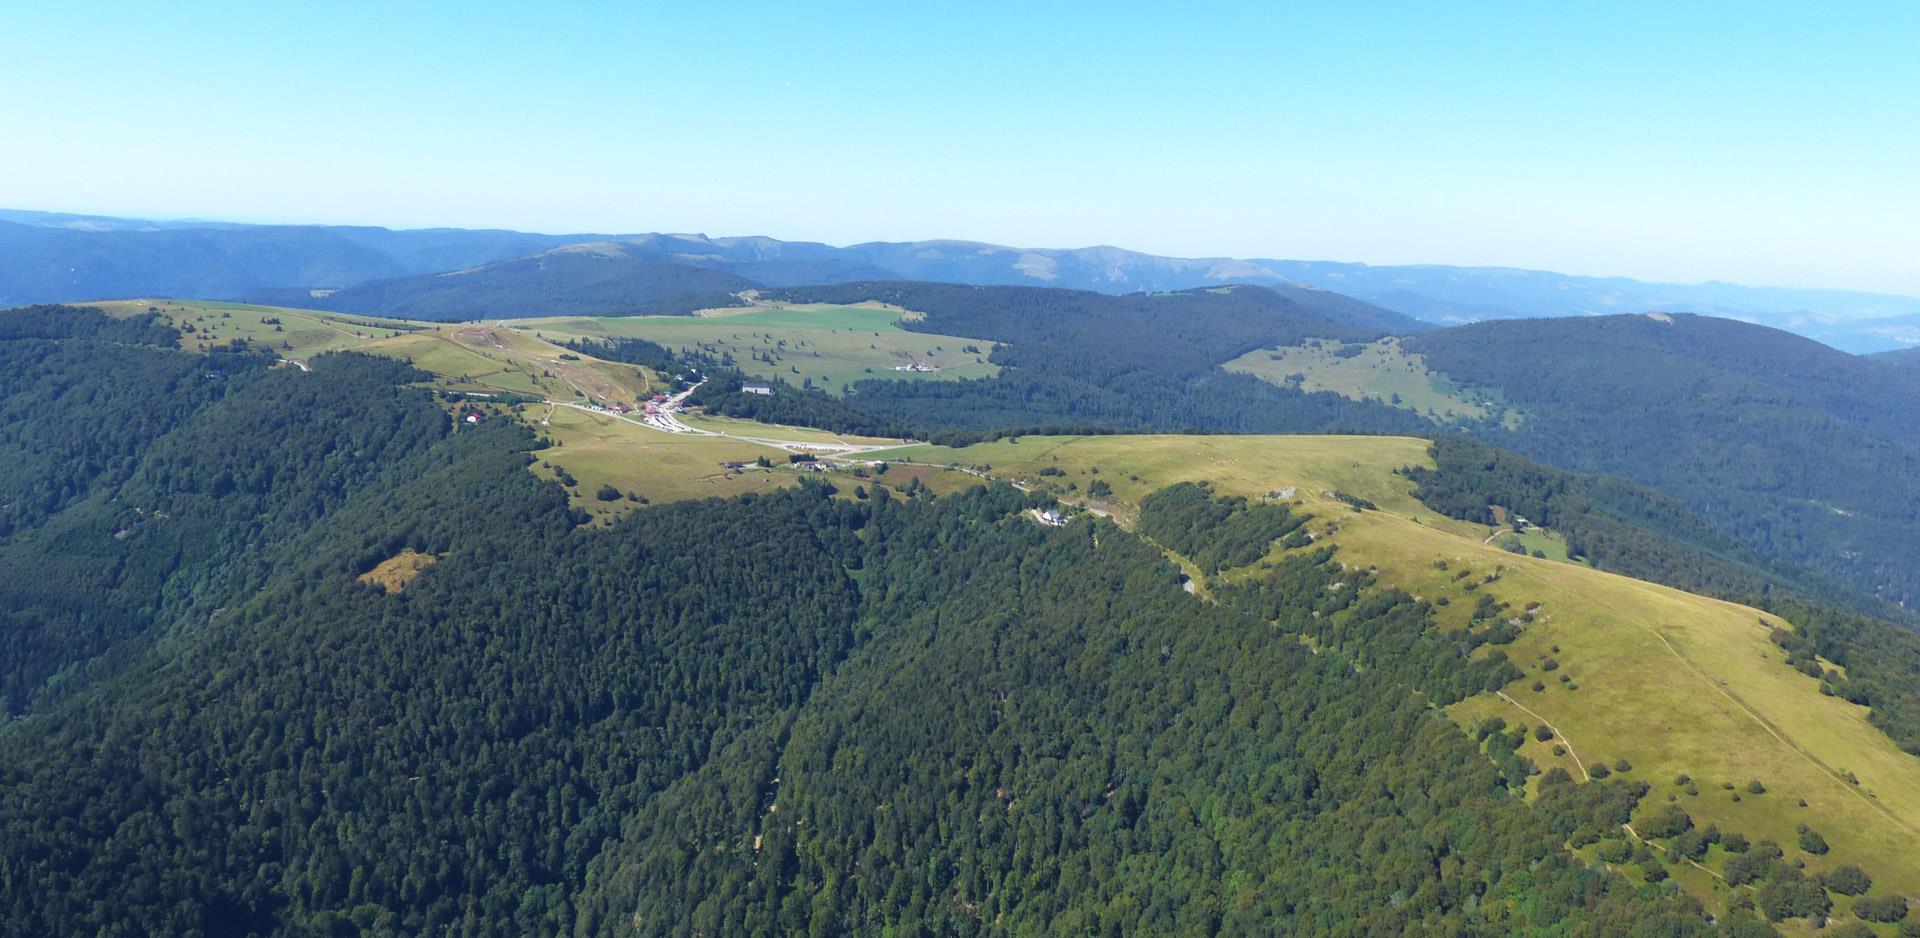 Vue aérienne du ballon d'Alsace, situé aux alentours du camping les Castors dans le Haut-Rhin